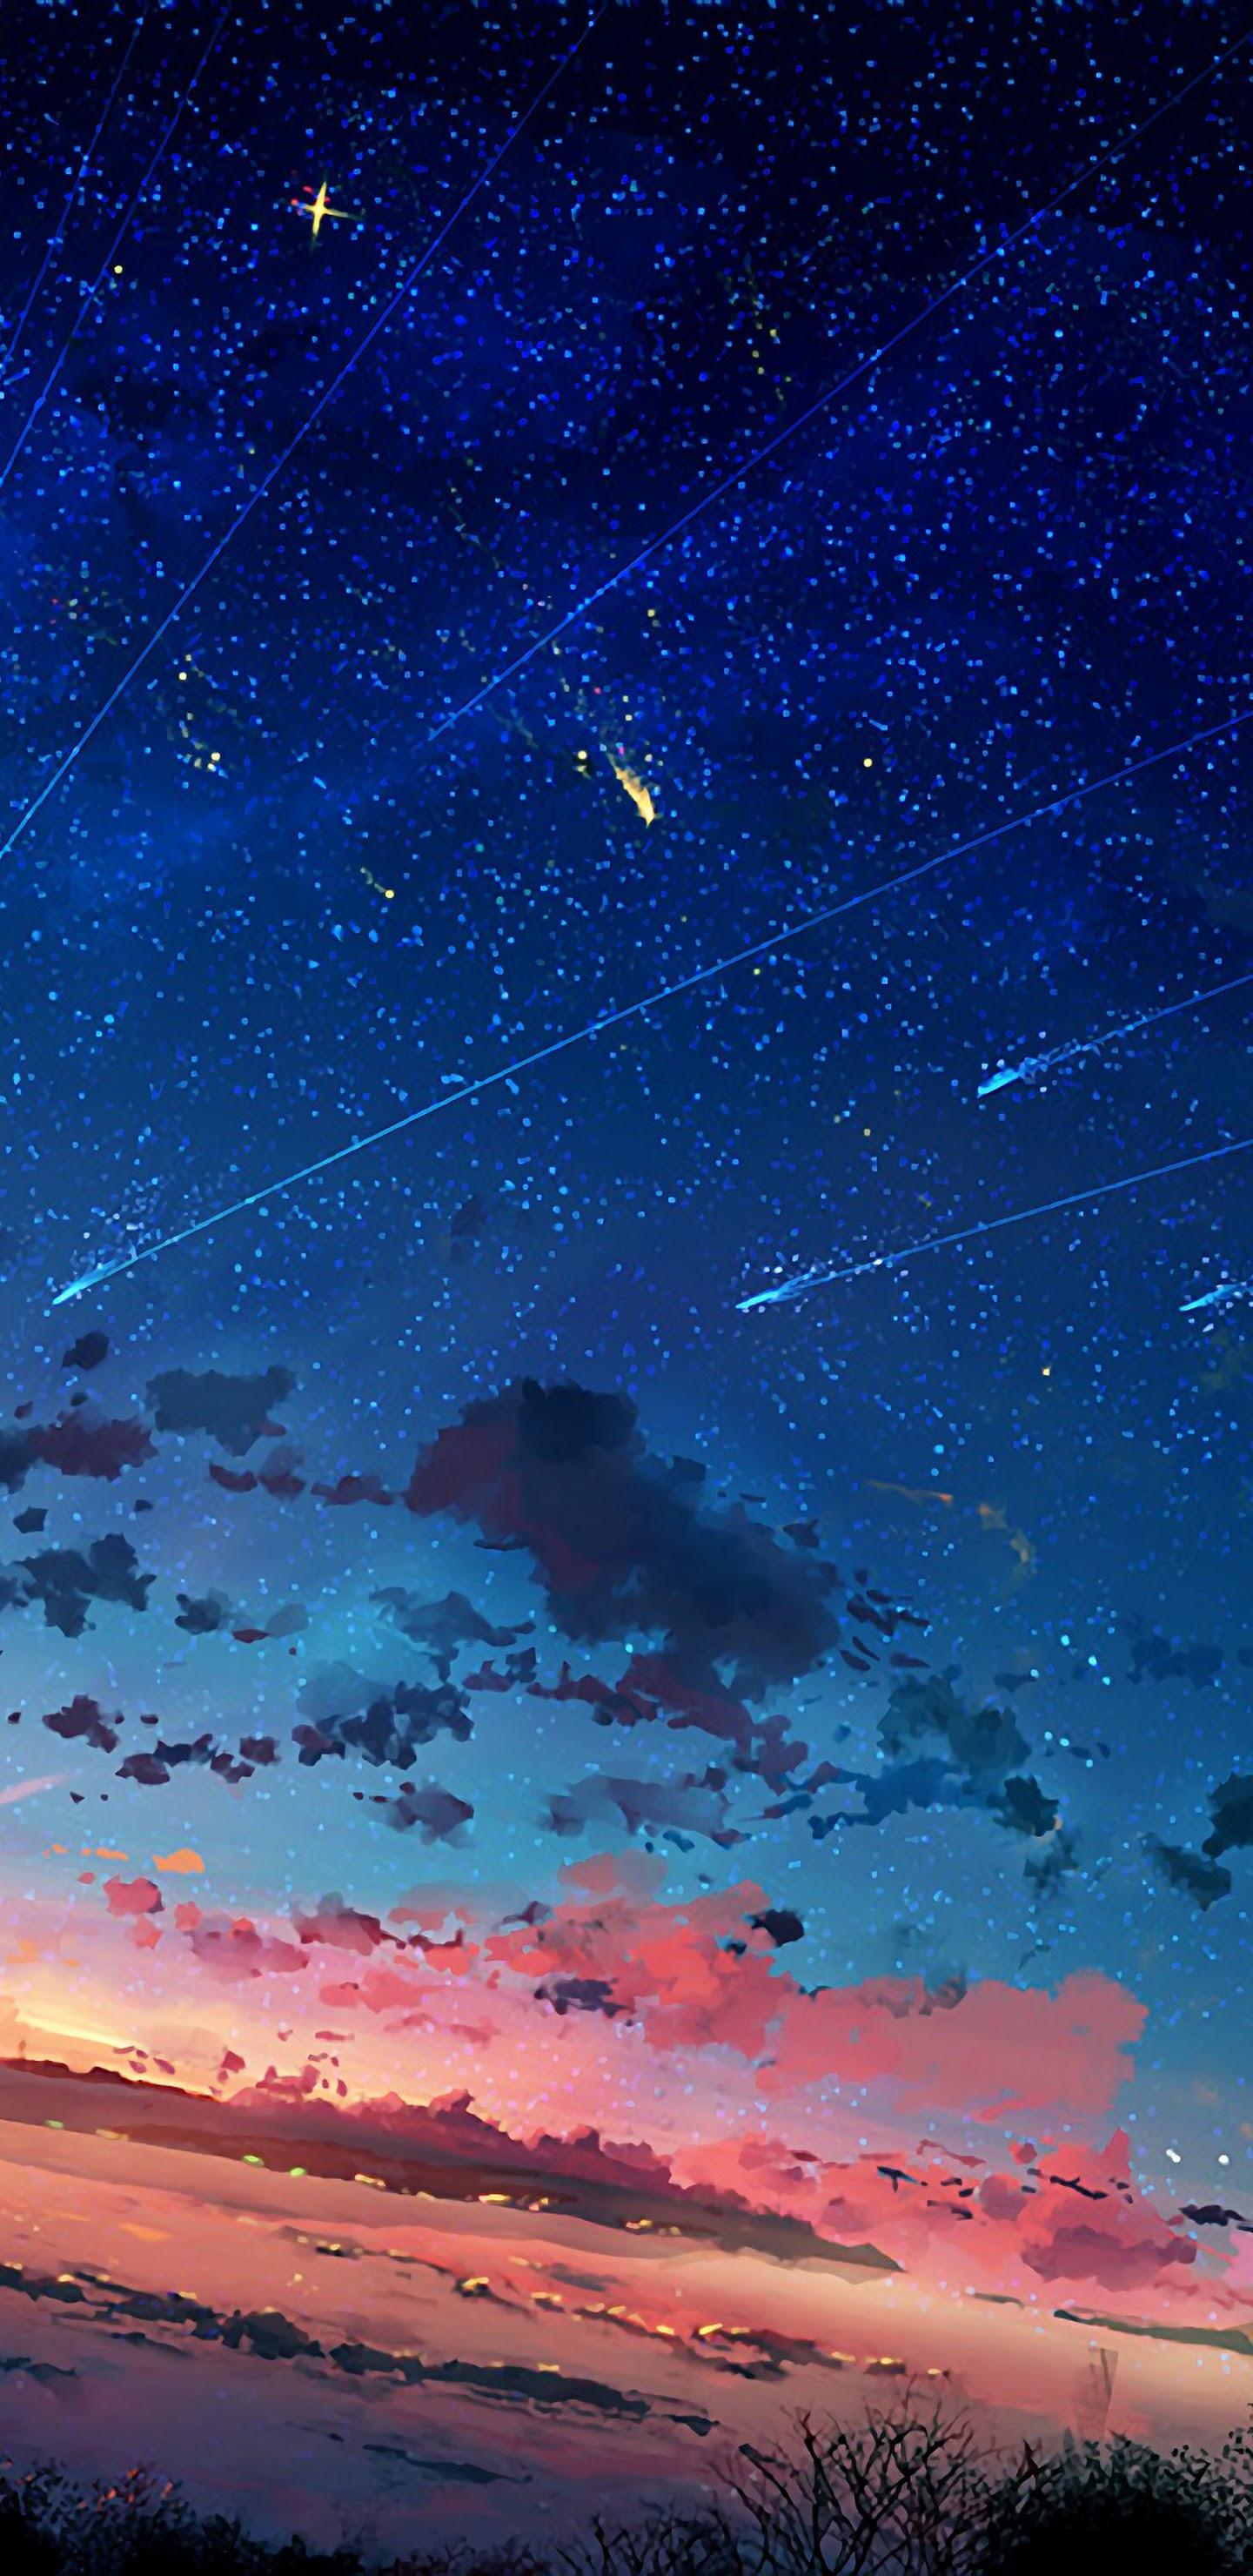 Anime Sunset 4K Vertical Wallpaper Free Anime Sunset 4K Vertical Background